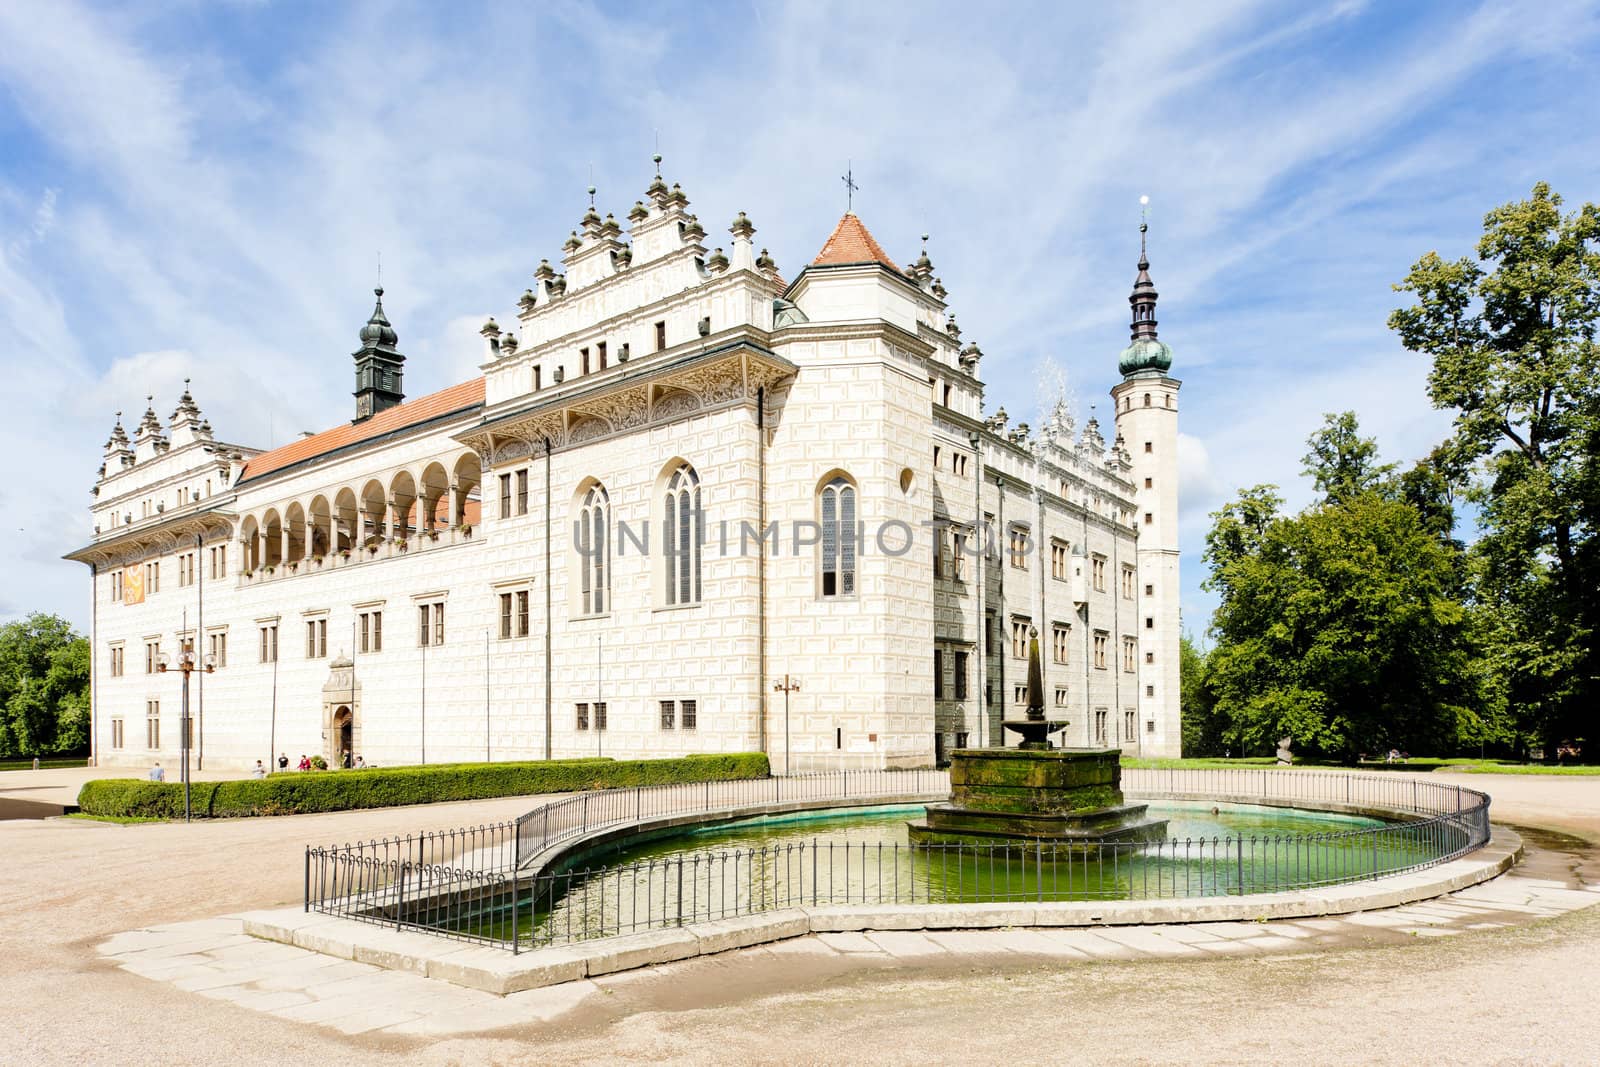 Litomysl Palace, Czech Republic by phbcz